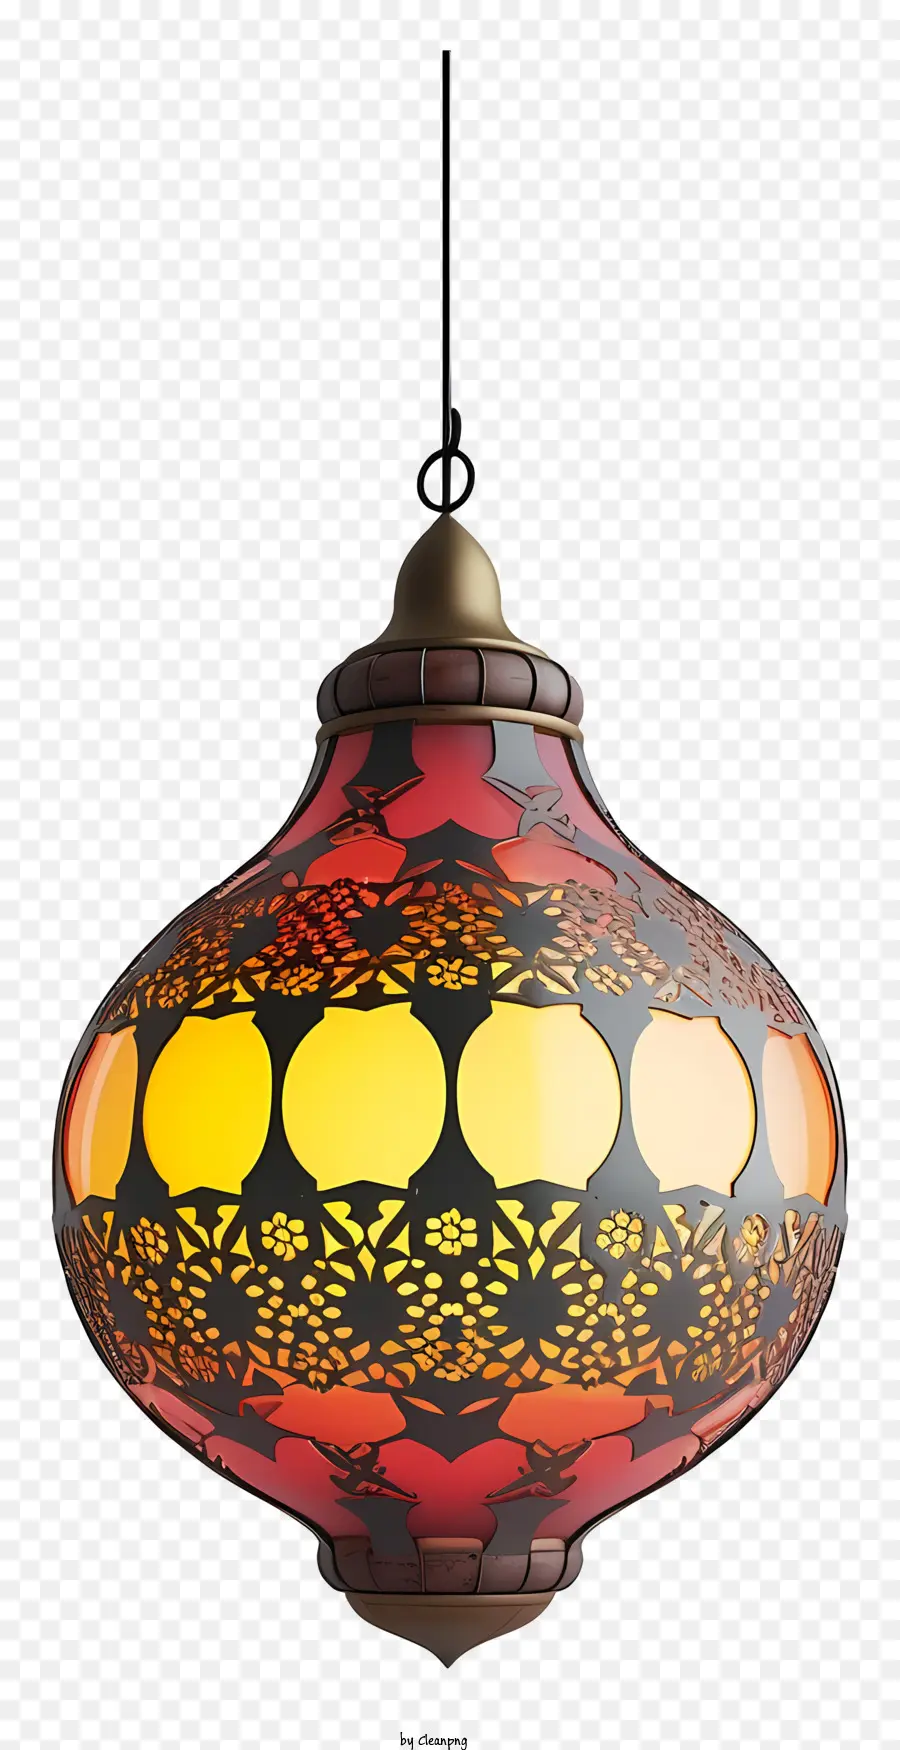 Islamico la lampada - Lampada di vetro colorata appesa alla catena nera